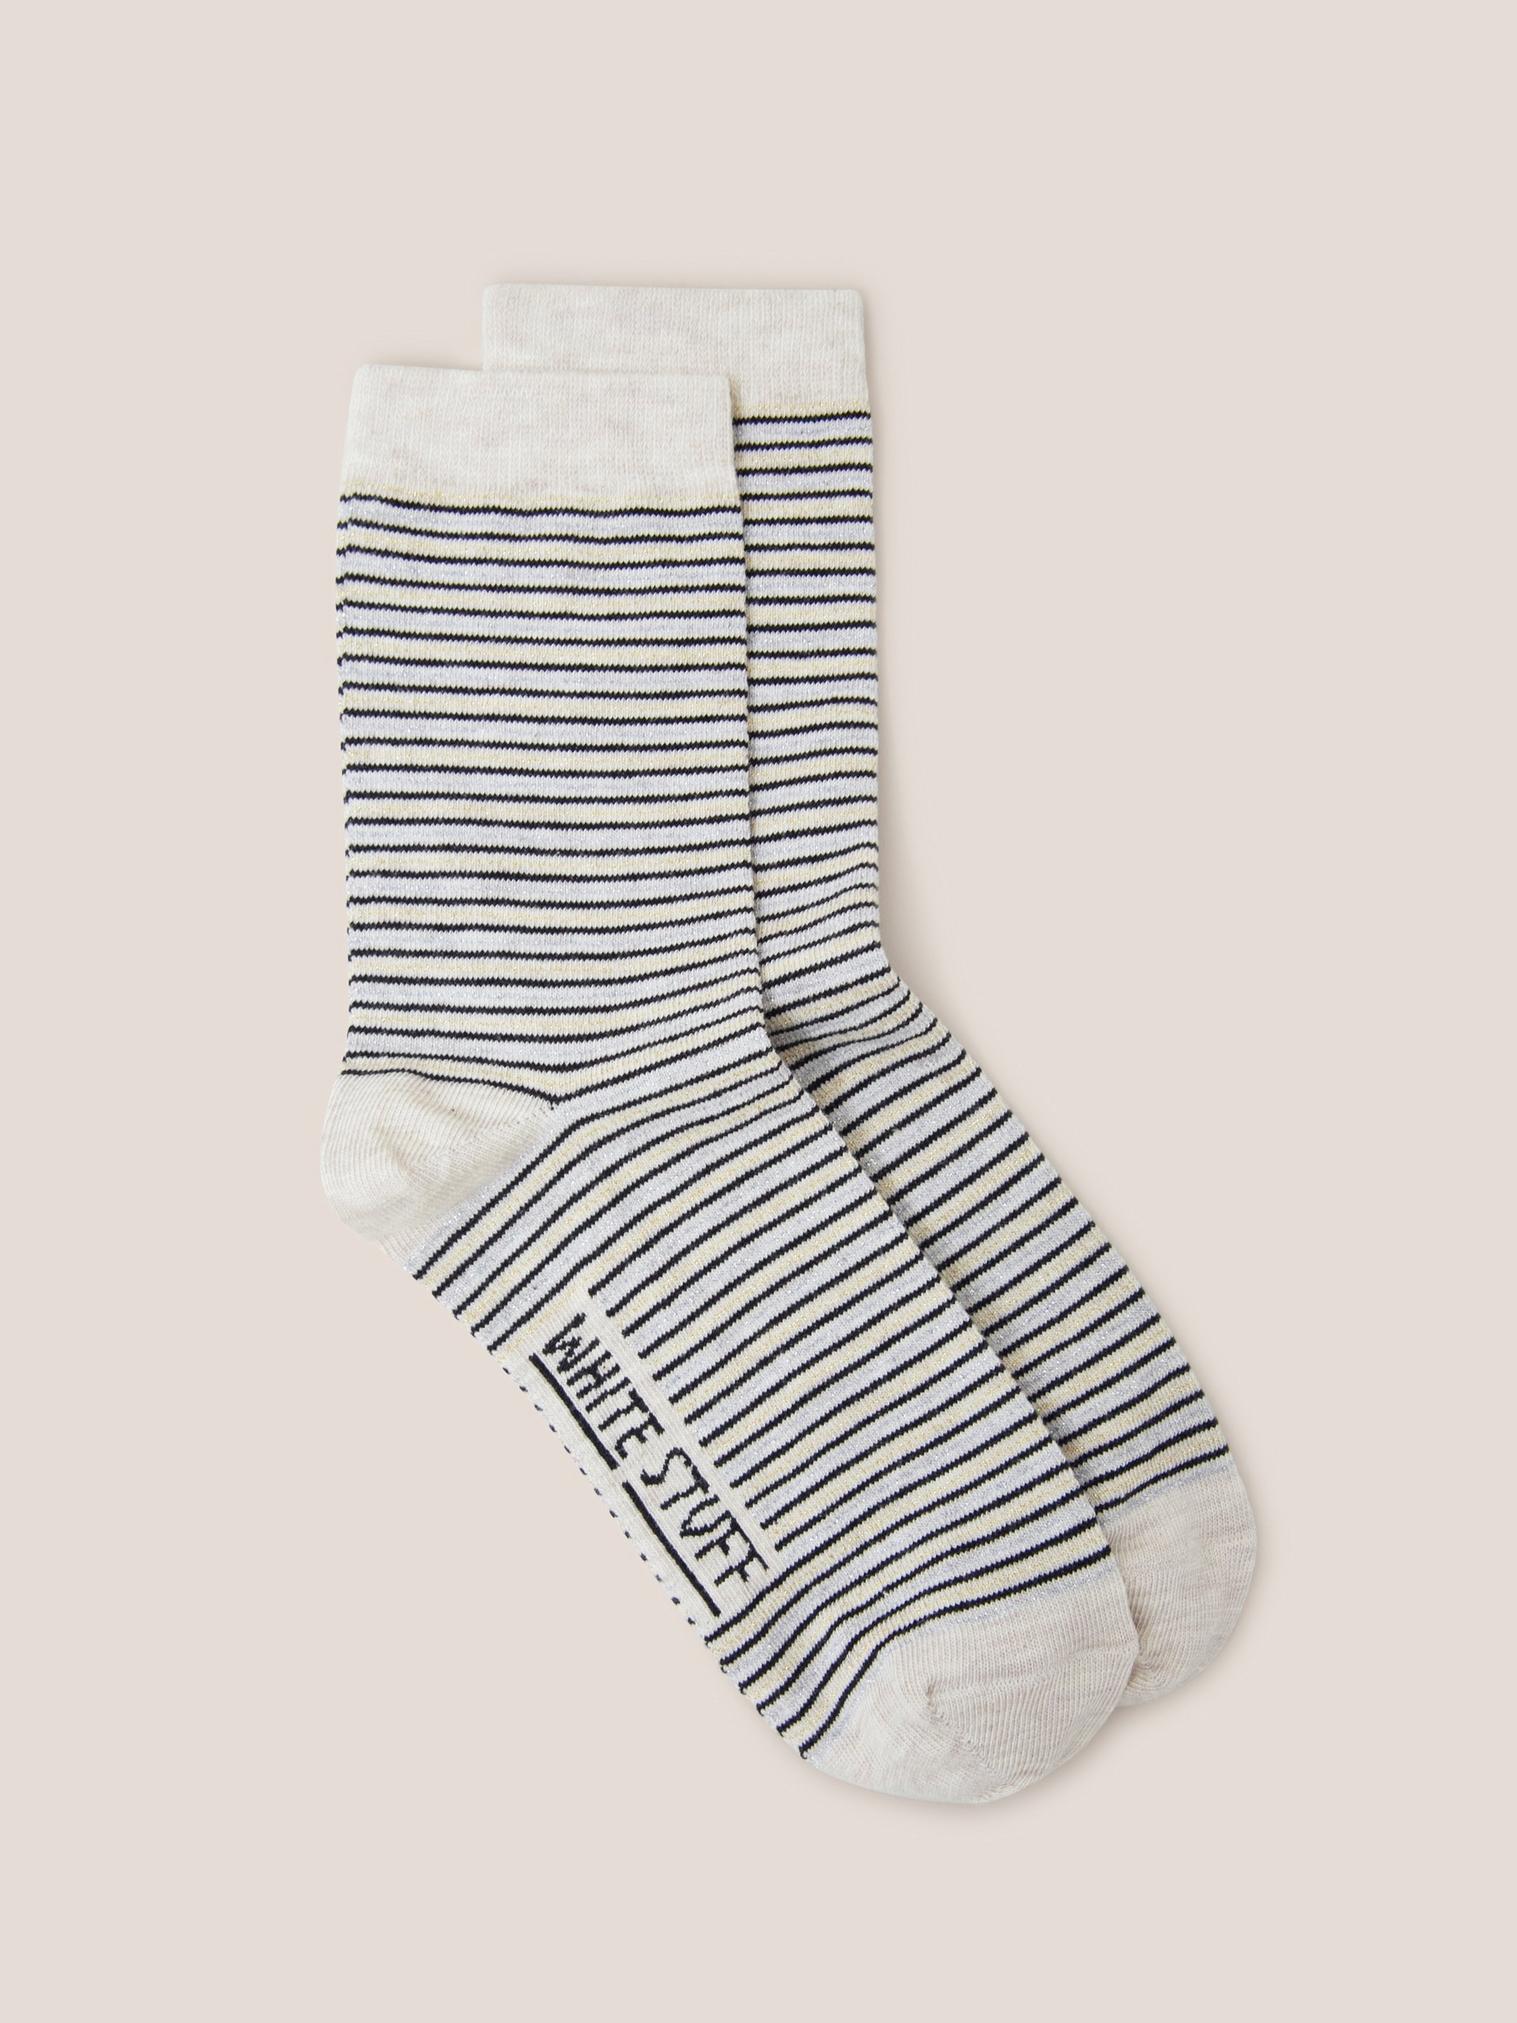 Stripe Sparkle Ankle Socks in NAT MLT - FLAT FRONT